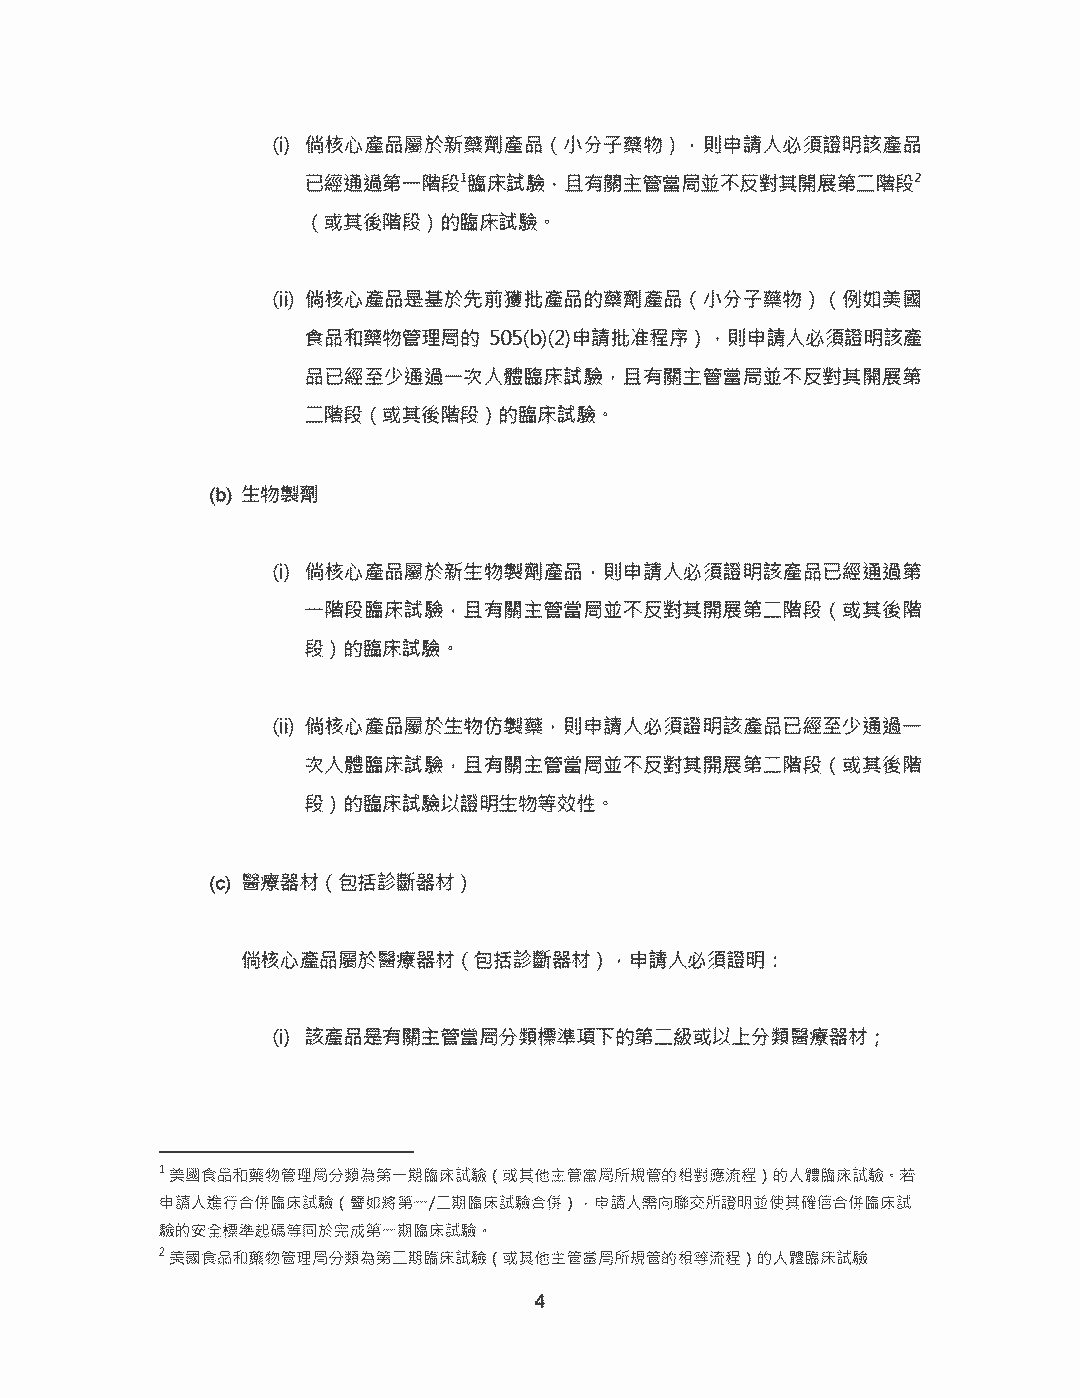 香港聯交所對生物科技公司還是有要求的，不是所有的生物科技公司都可以的 - 生物科技公司香港上市申請指引(《主板規則》第18A章)